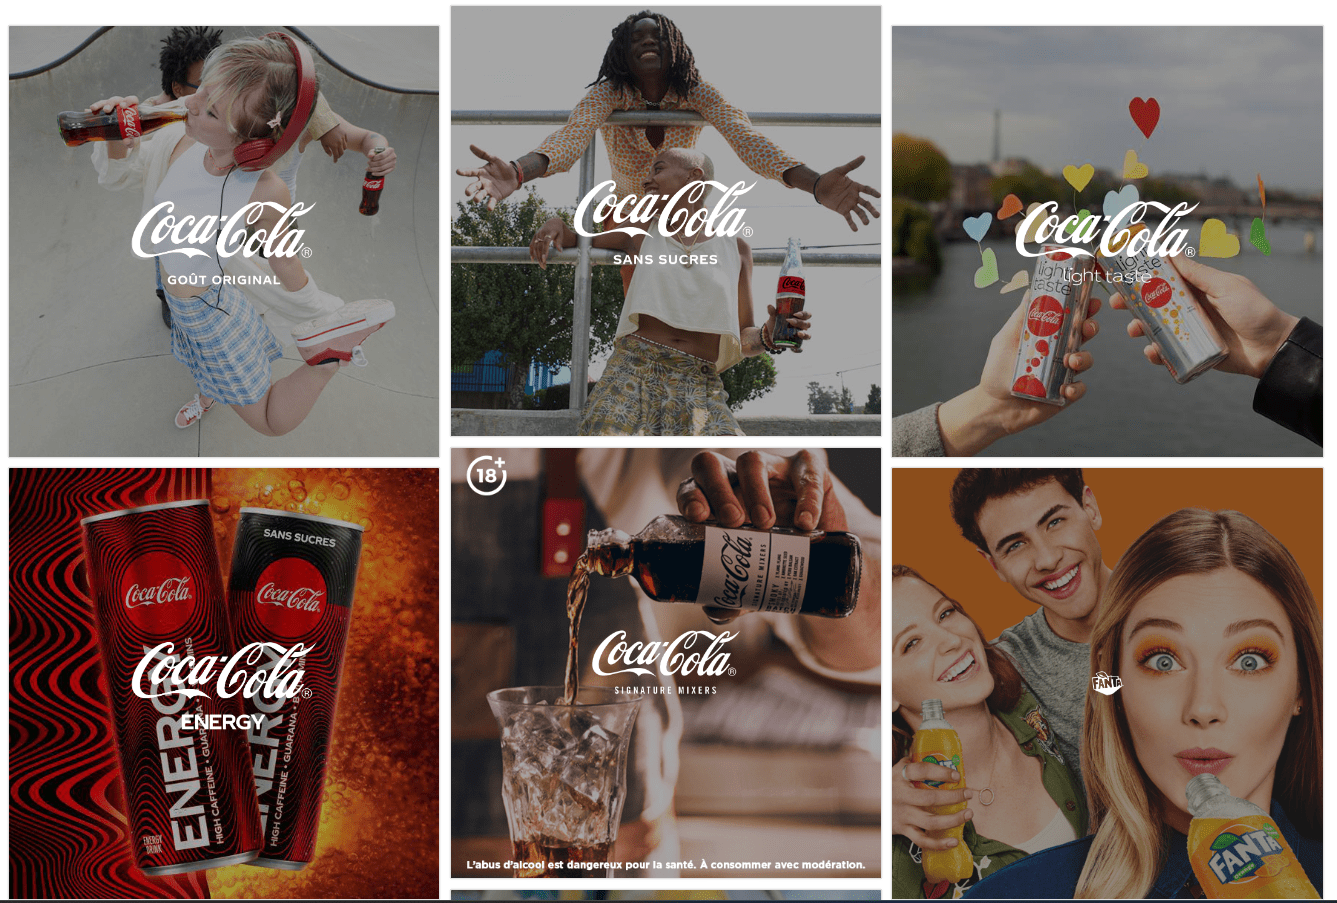 Extrait du site Coca-Cola France montrant toutes les marques détenues par le groupe.